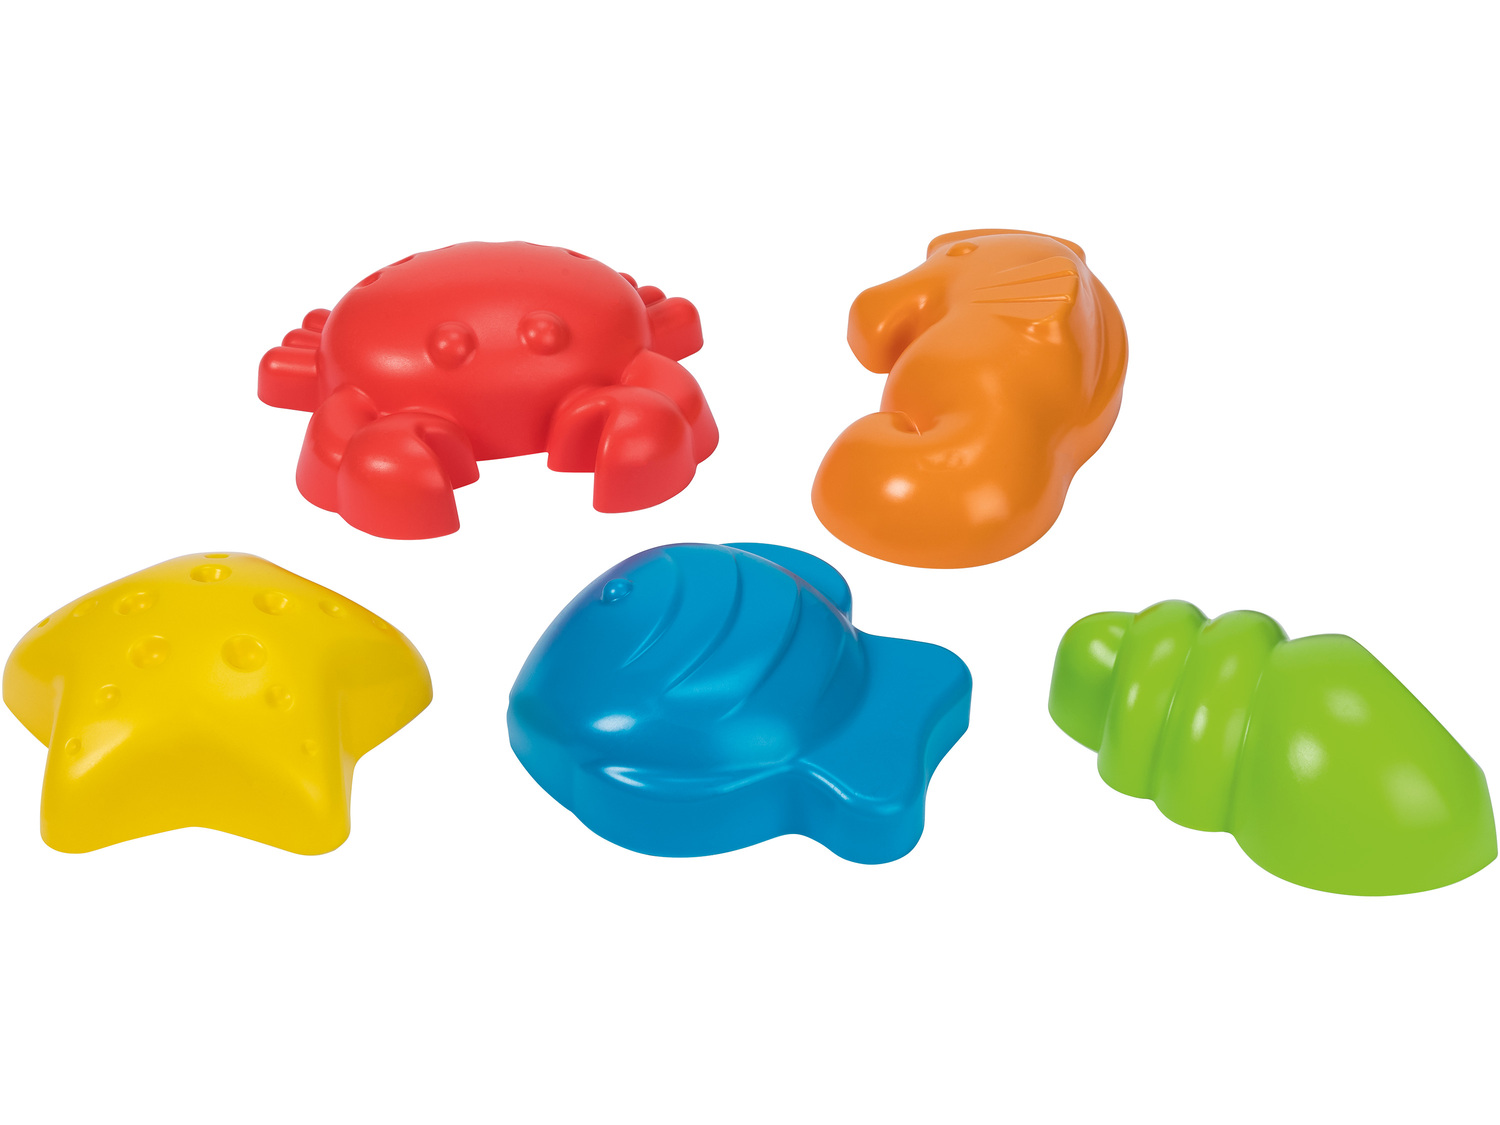 Zabawki do piaskownicy Playtive Junior, cena 12,99 PLN  
7 rodzajów
Opis

- 1